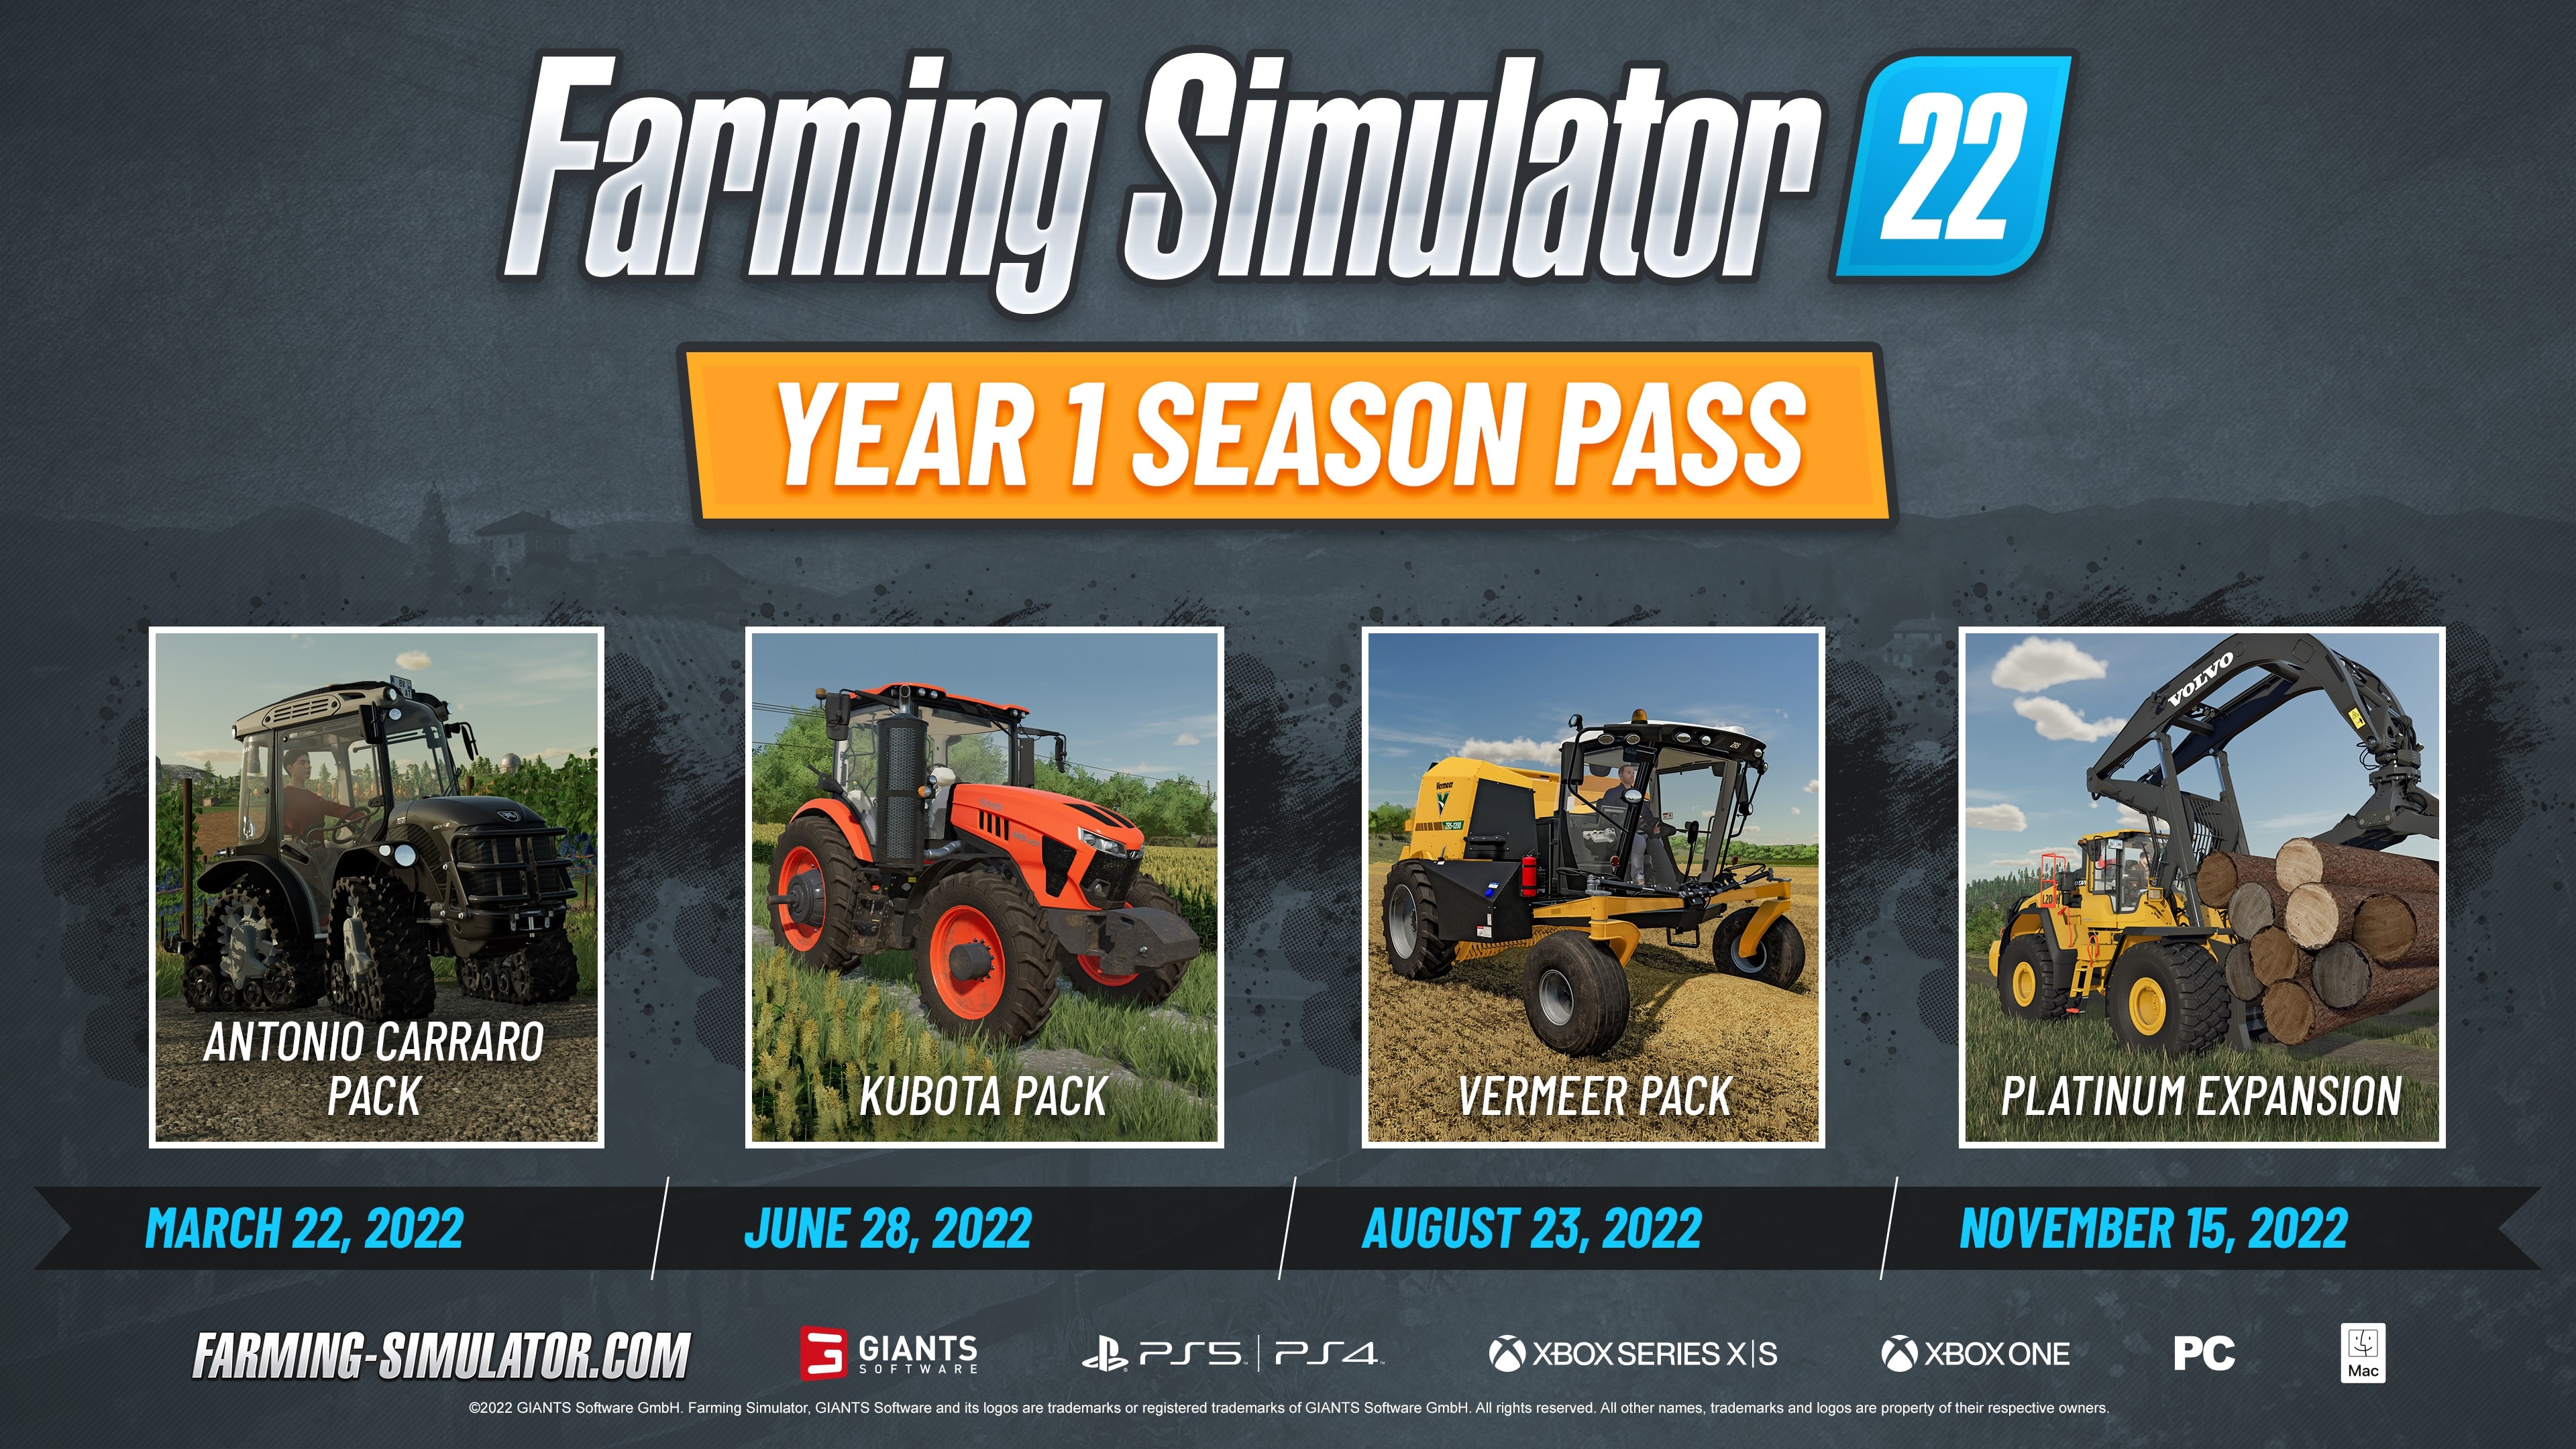 Landwirtschafts-Simulator 22 - Year 1 Bundle